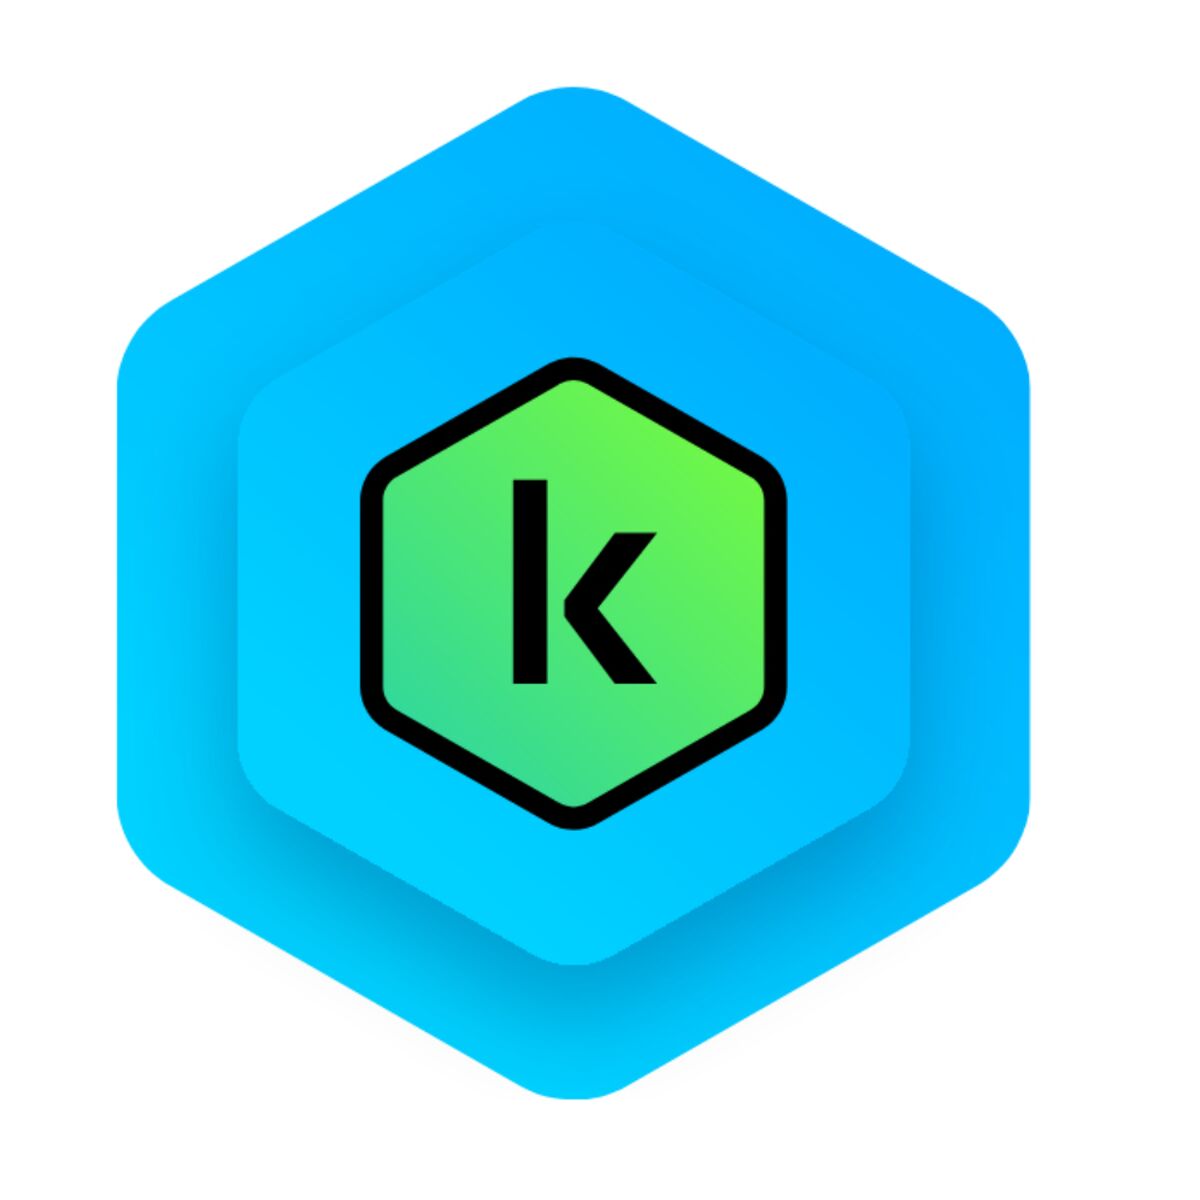 Λογισμικό Διαχείρισης Kaspersky KL1041S5KFS-MINI-ES Μπλε